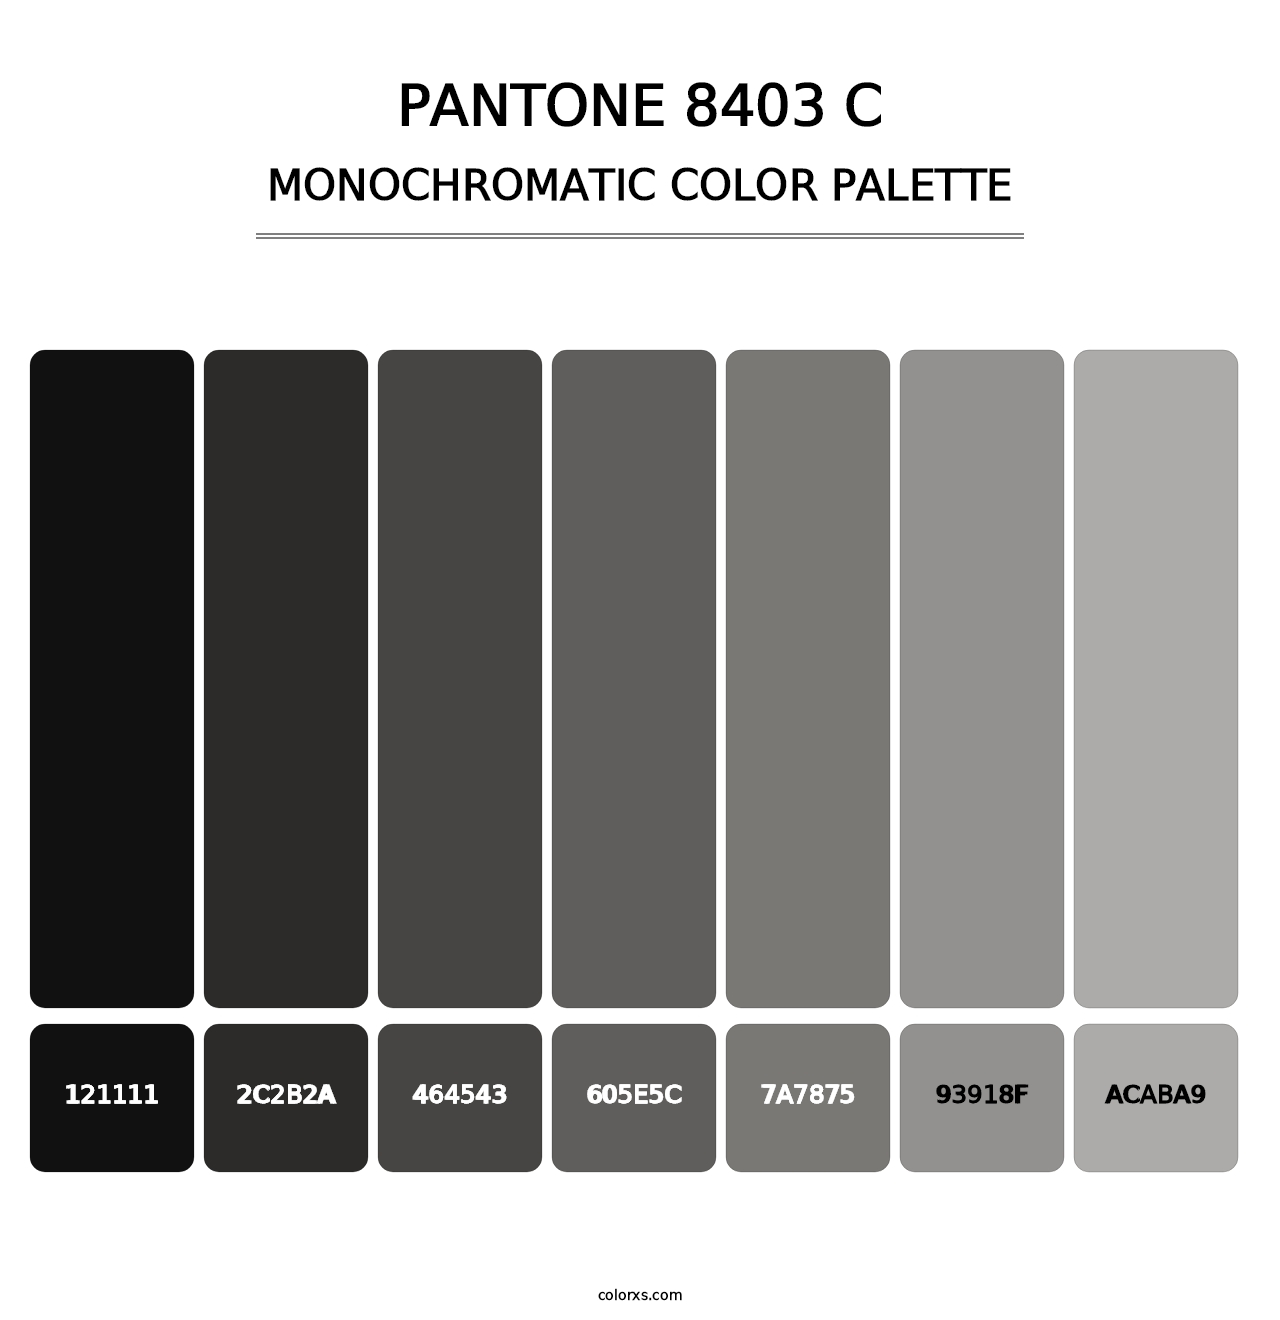 PANTONE 8403 C - Monochromatic Color Palette